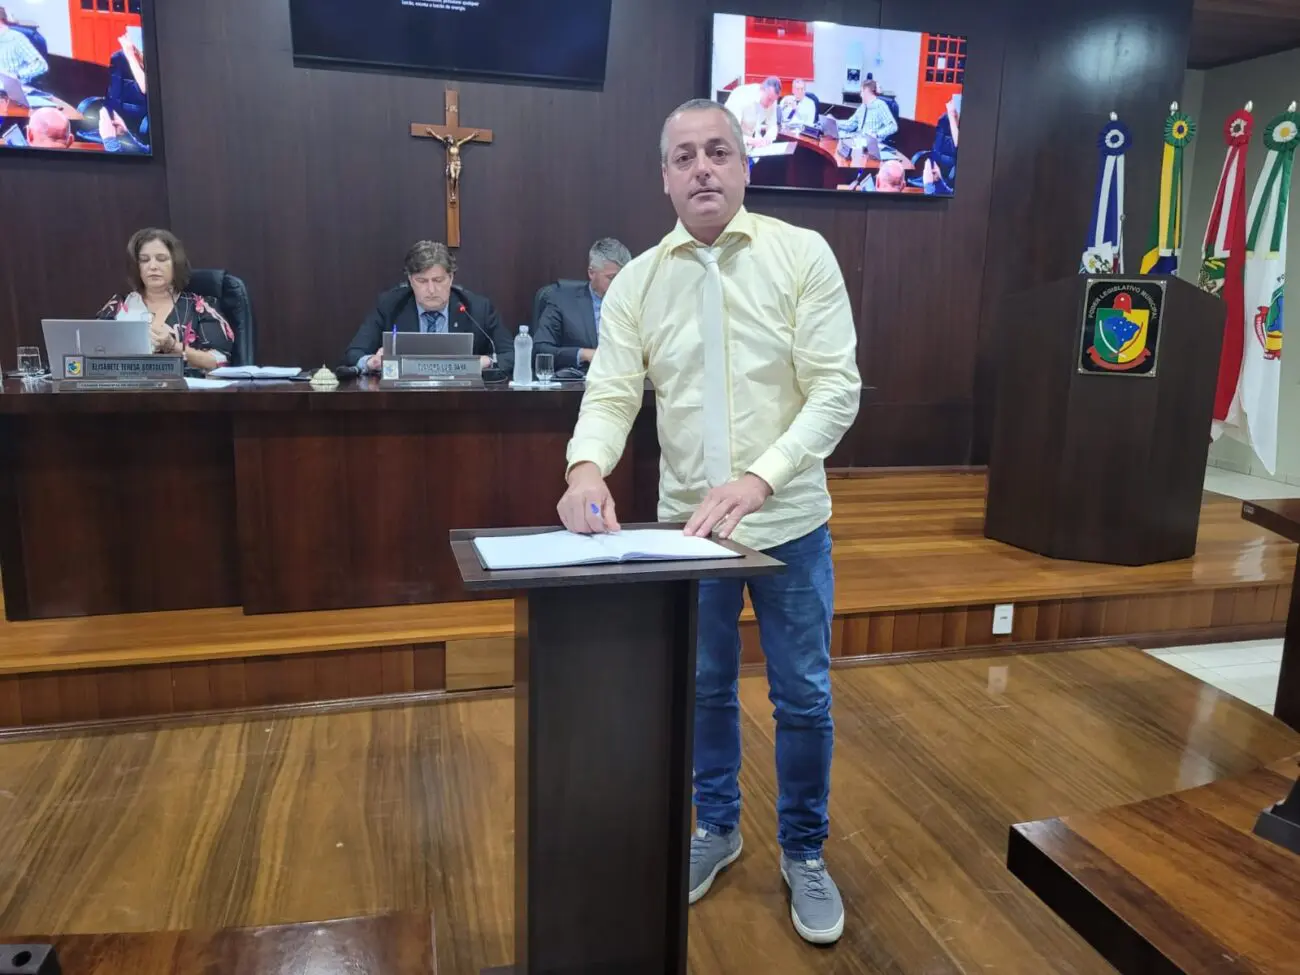 Rodrigo Vitali Spillere assume por 30 dias no legislativo